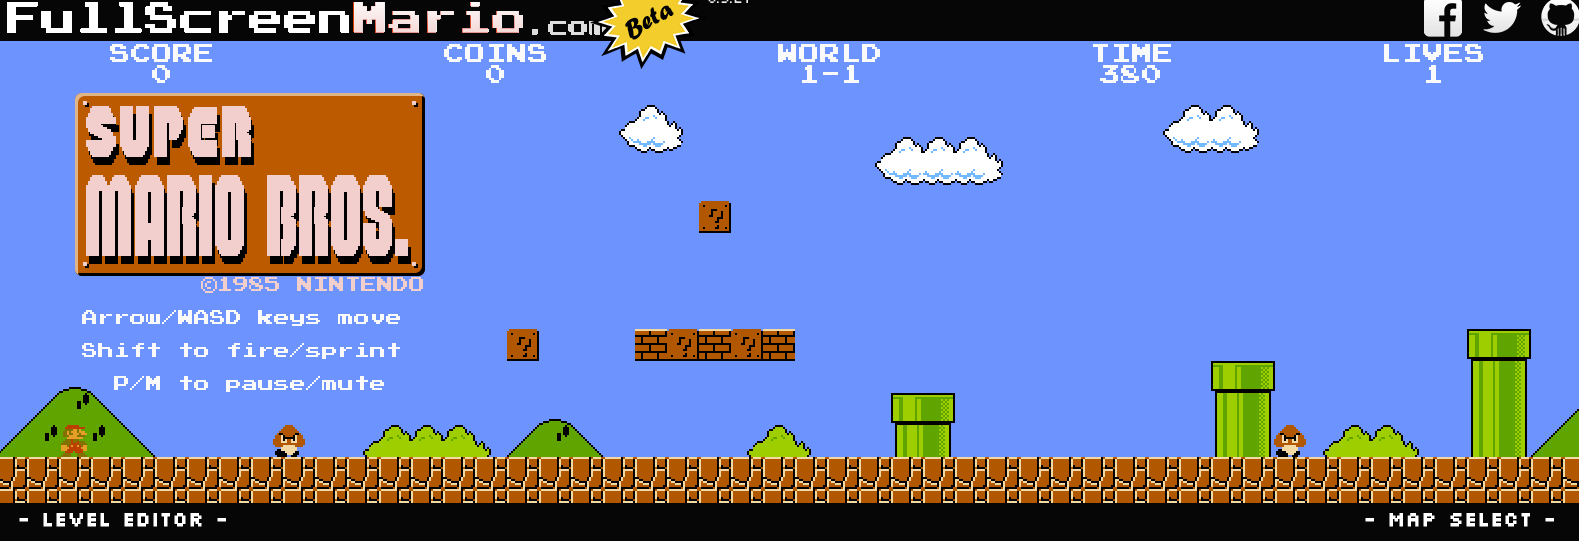 nintendo fan games - Full Screen Mario